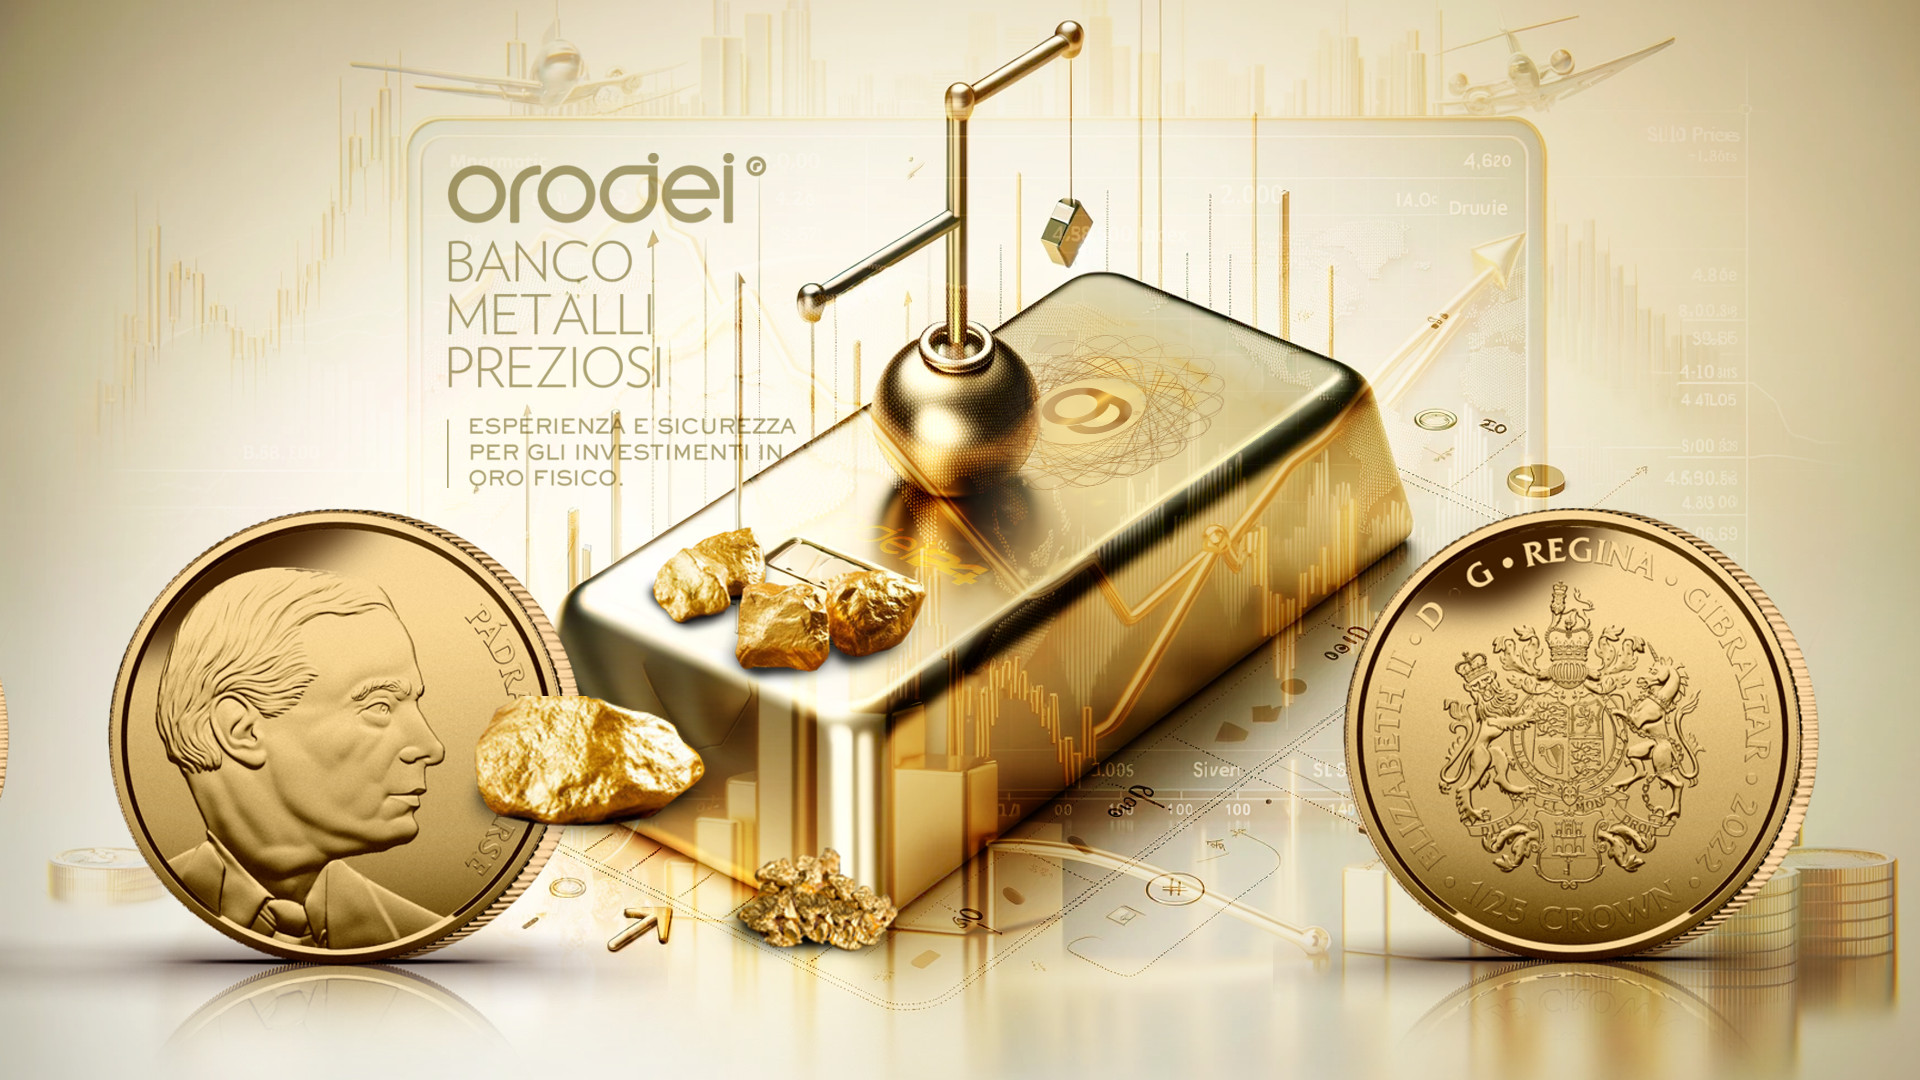 Orodei Banco Metalli Preziosi: Oro sotto pressione dai mercati esterni ribassisti, commenti restrittivi della Fed